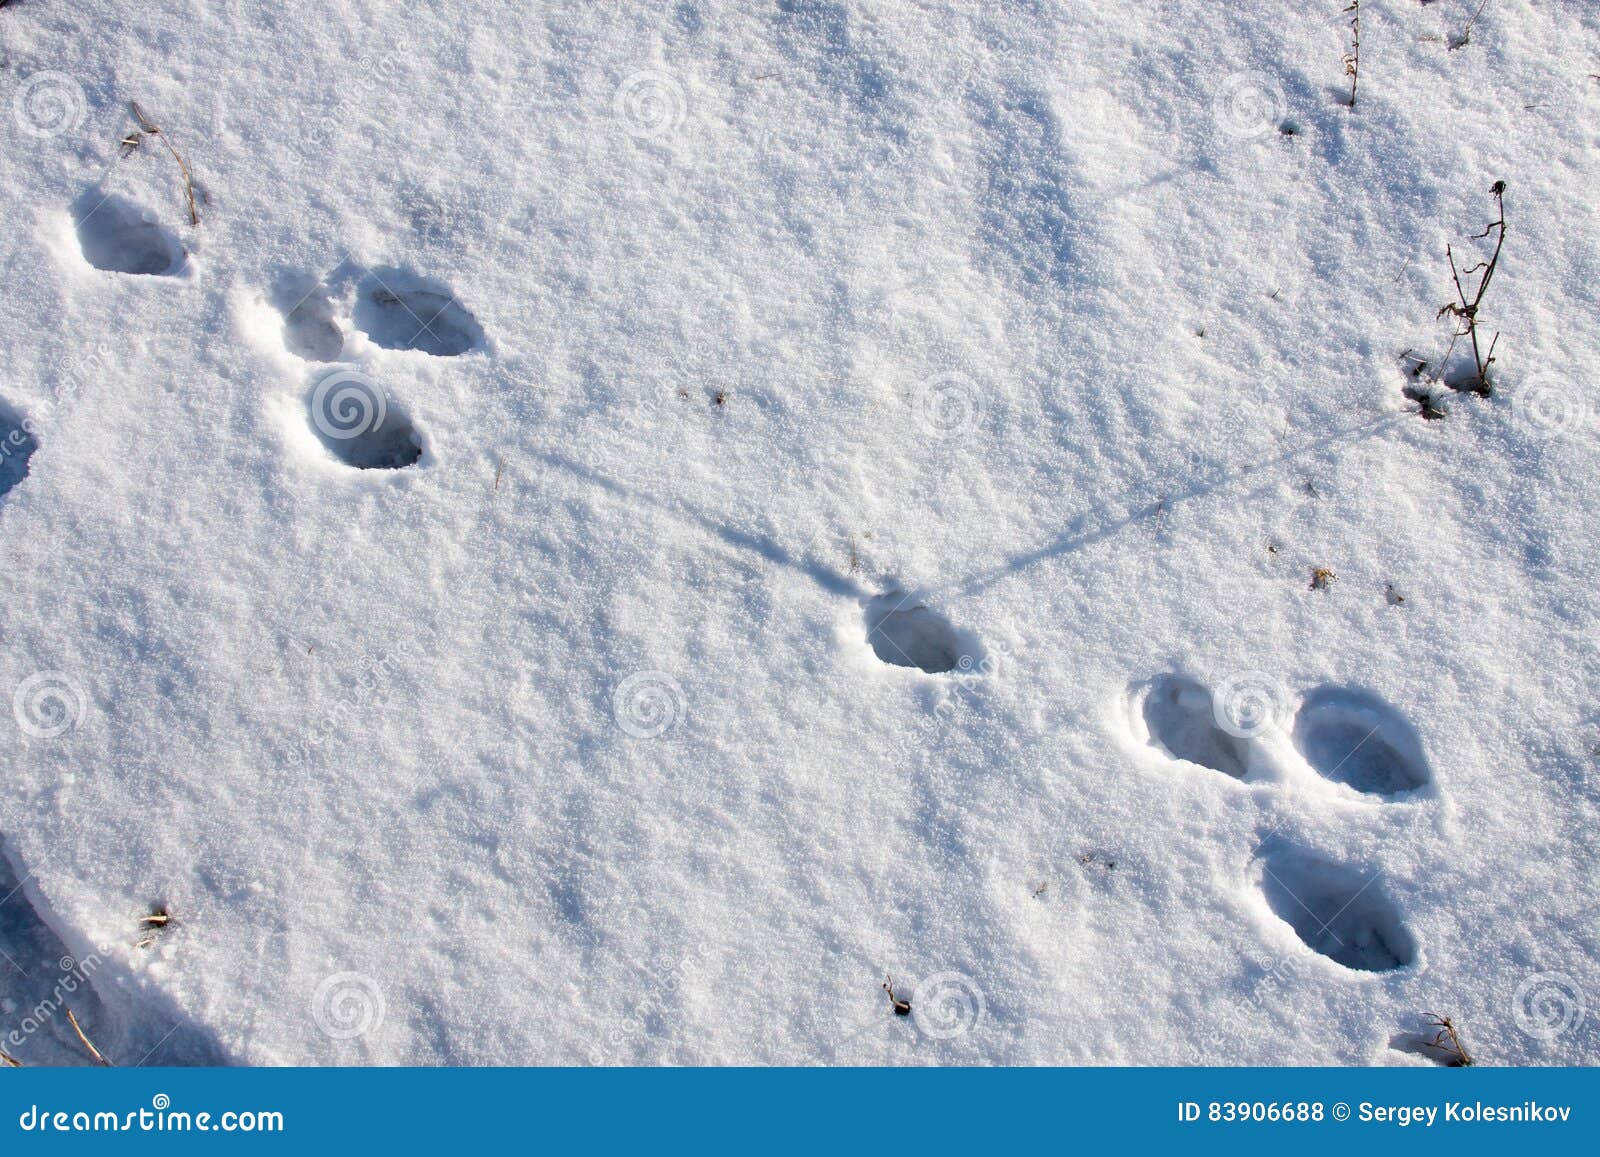 Не заячьи следы как пишется. Следы зайца зимой. Следы зайца на снегу. Кроличьи следы на снегу. Зимние следы зайца.